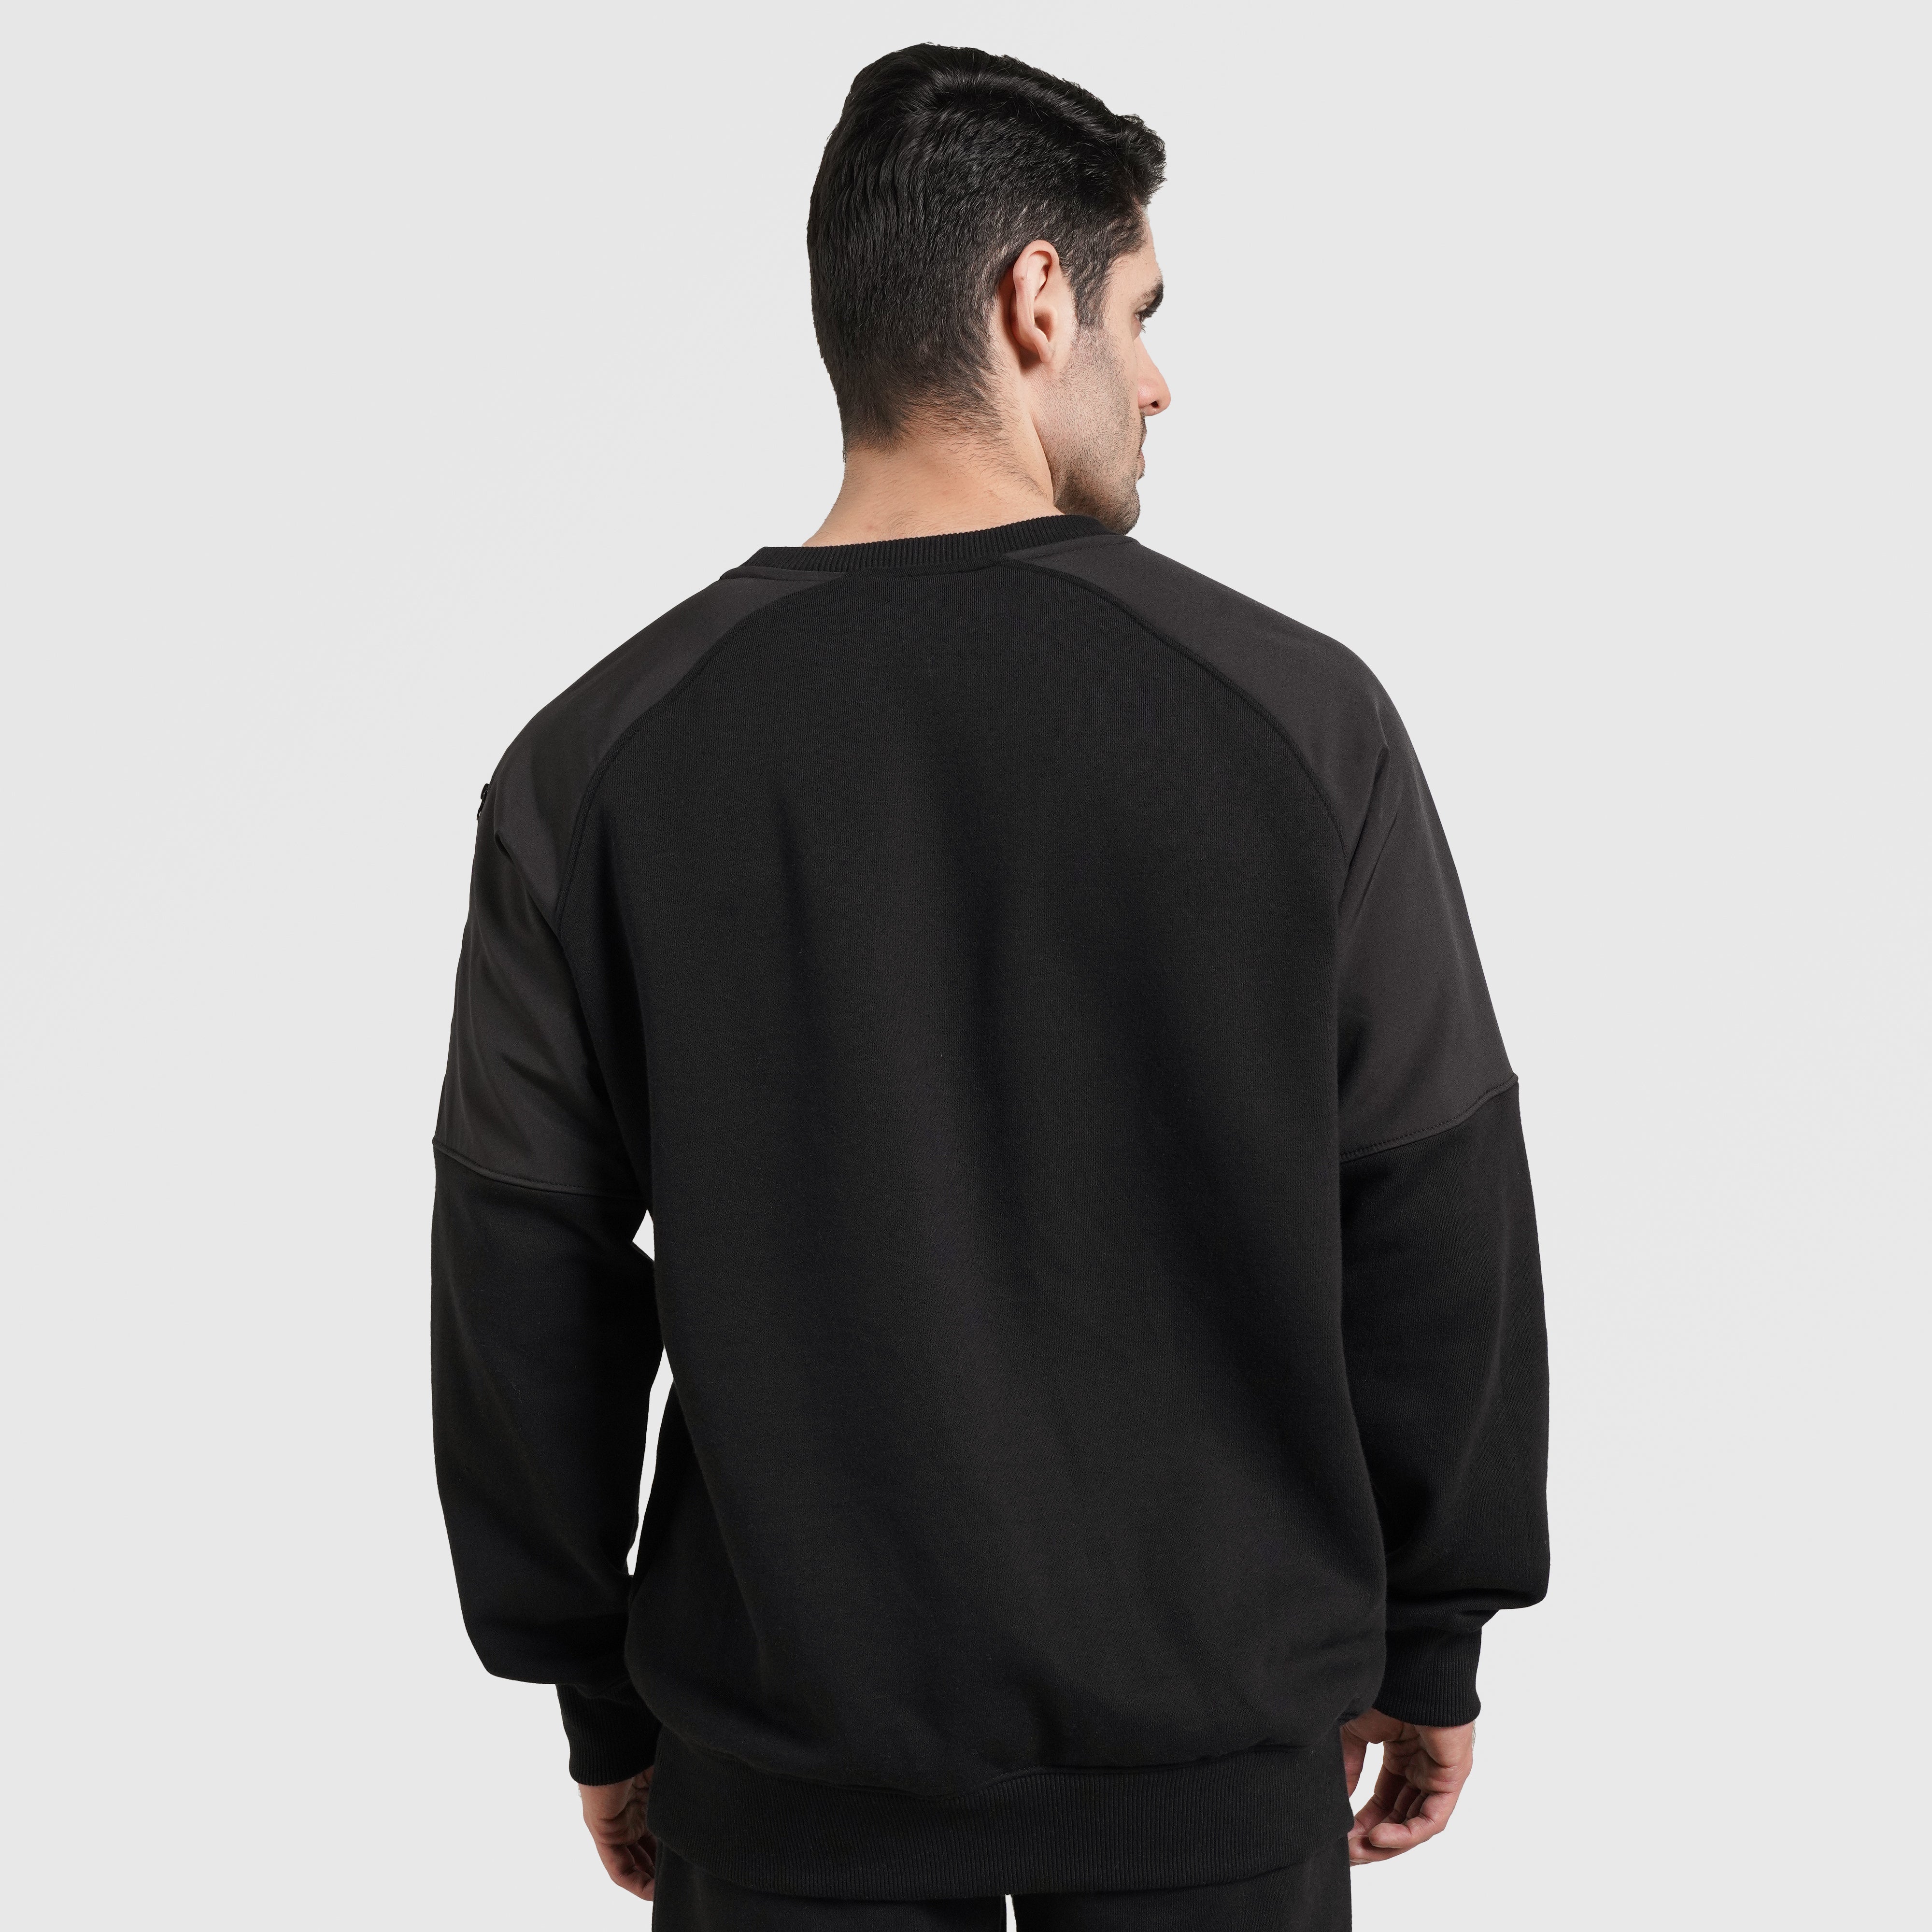 Digit Sweatshirt (Black)